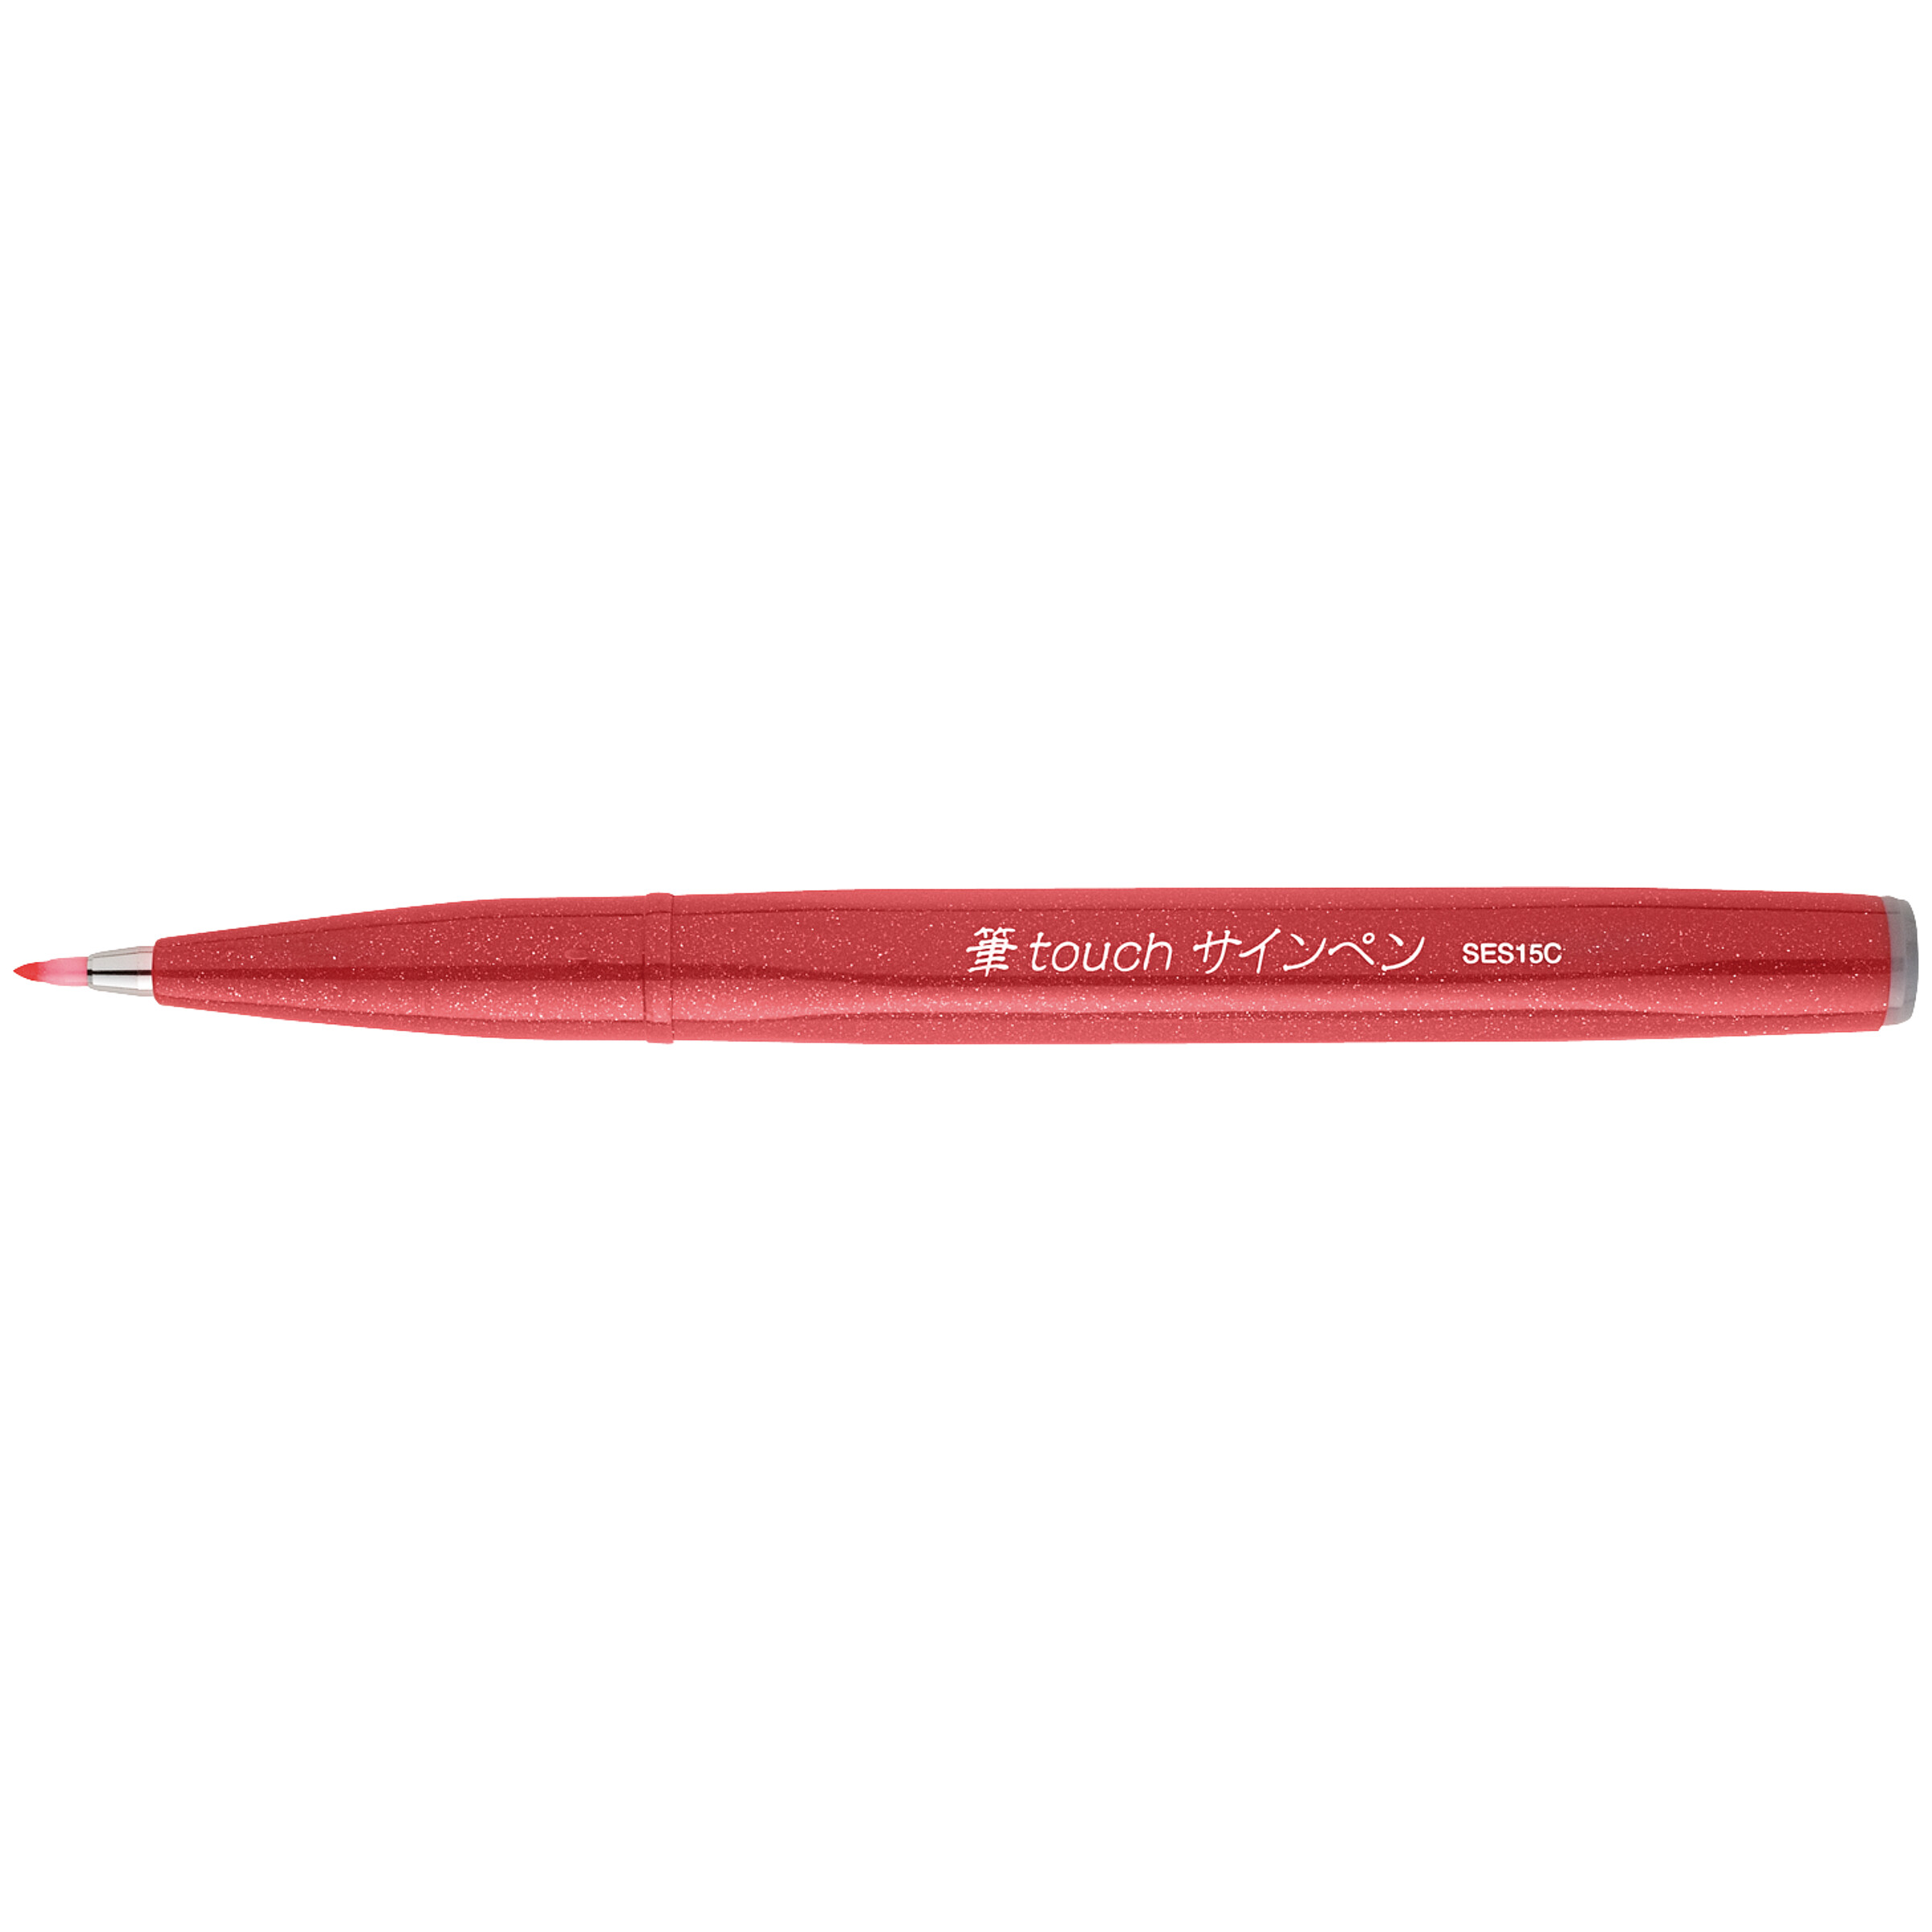 Royal Talens – Ecoline Brush Pen Set, boesner Suisse